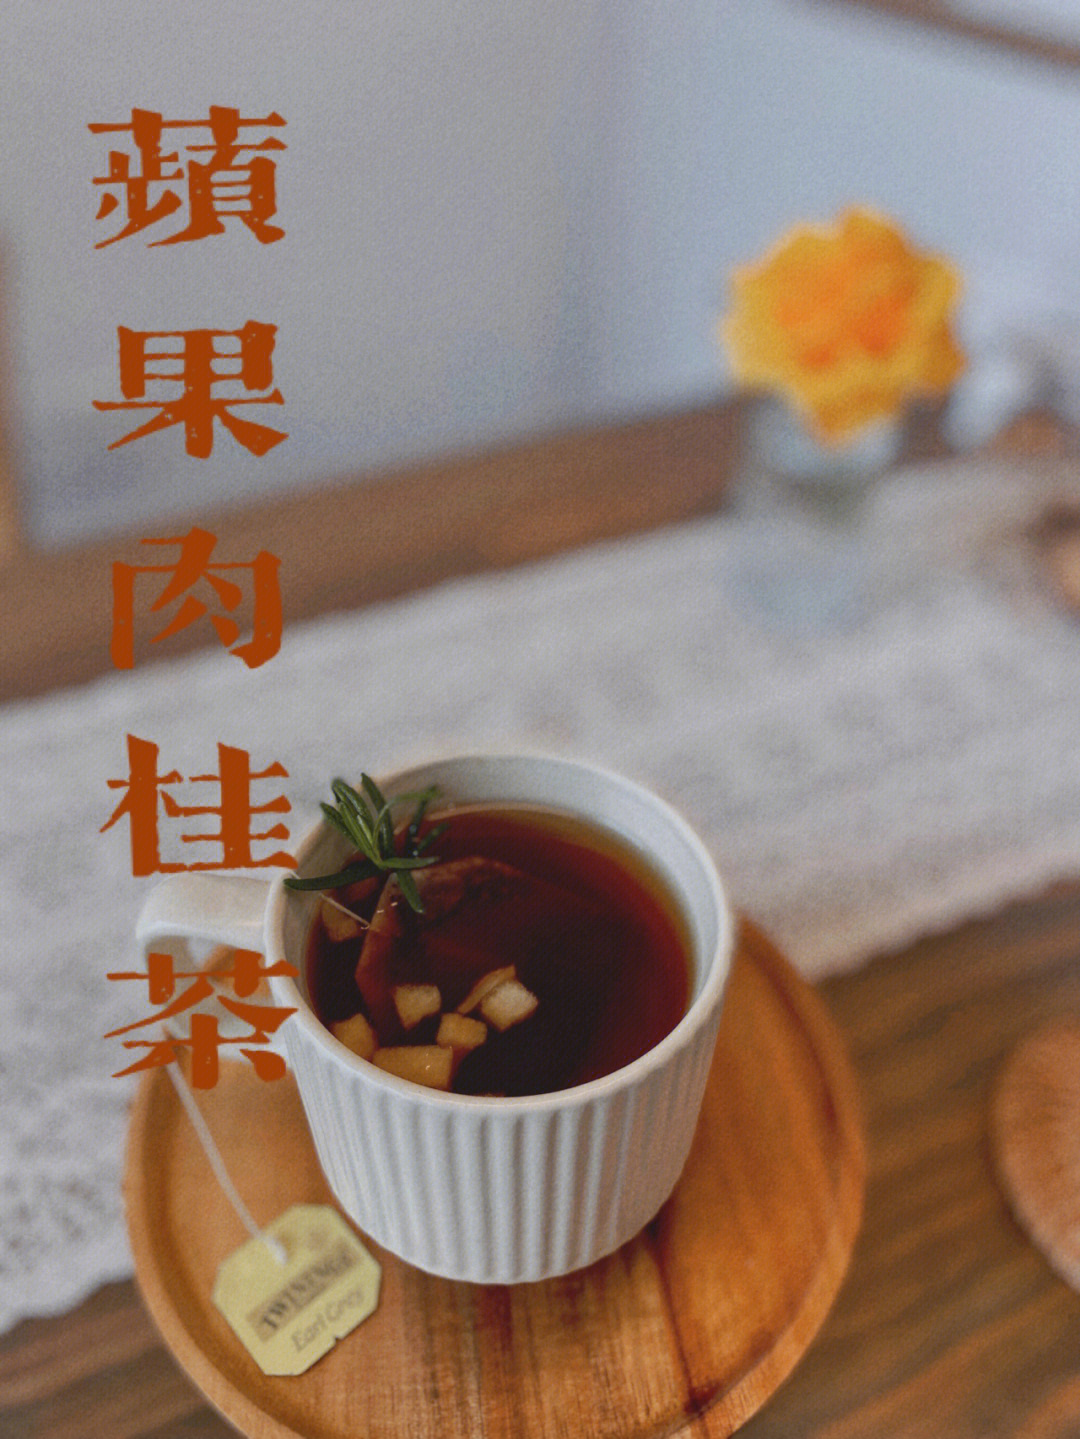 50g肉桂5g(可添加少量柠檬汁防止苹果氧化)川宁伯爵红茶一包迷迭香